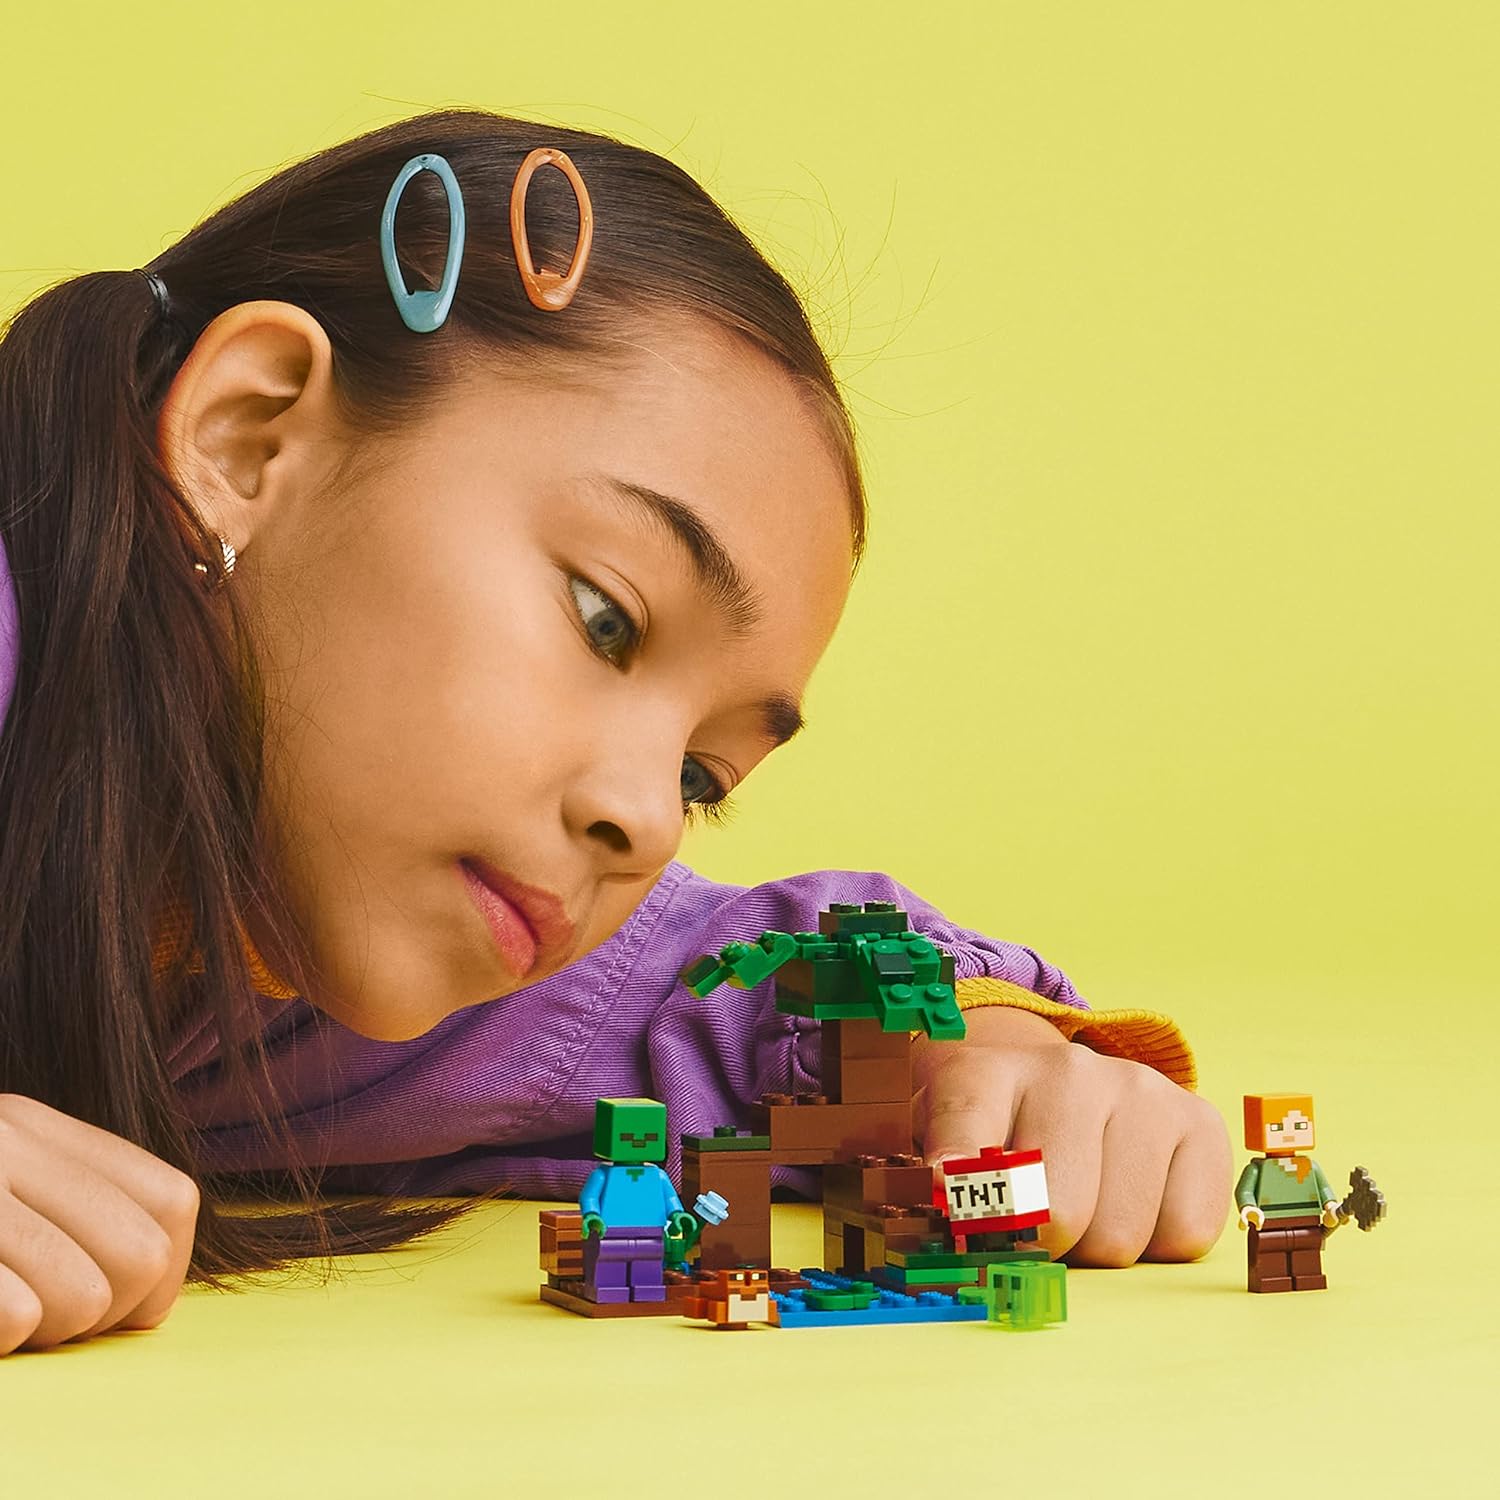 ليجو 21240 ماينكرافت ذا سوامب أدفينشر، لعبة بناء لعبة مع شخصيات أليكس وزومبي في بيوم، فكرة هدية عيد ميلاد للأطفال من سن 8 سنوات فما فوق